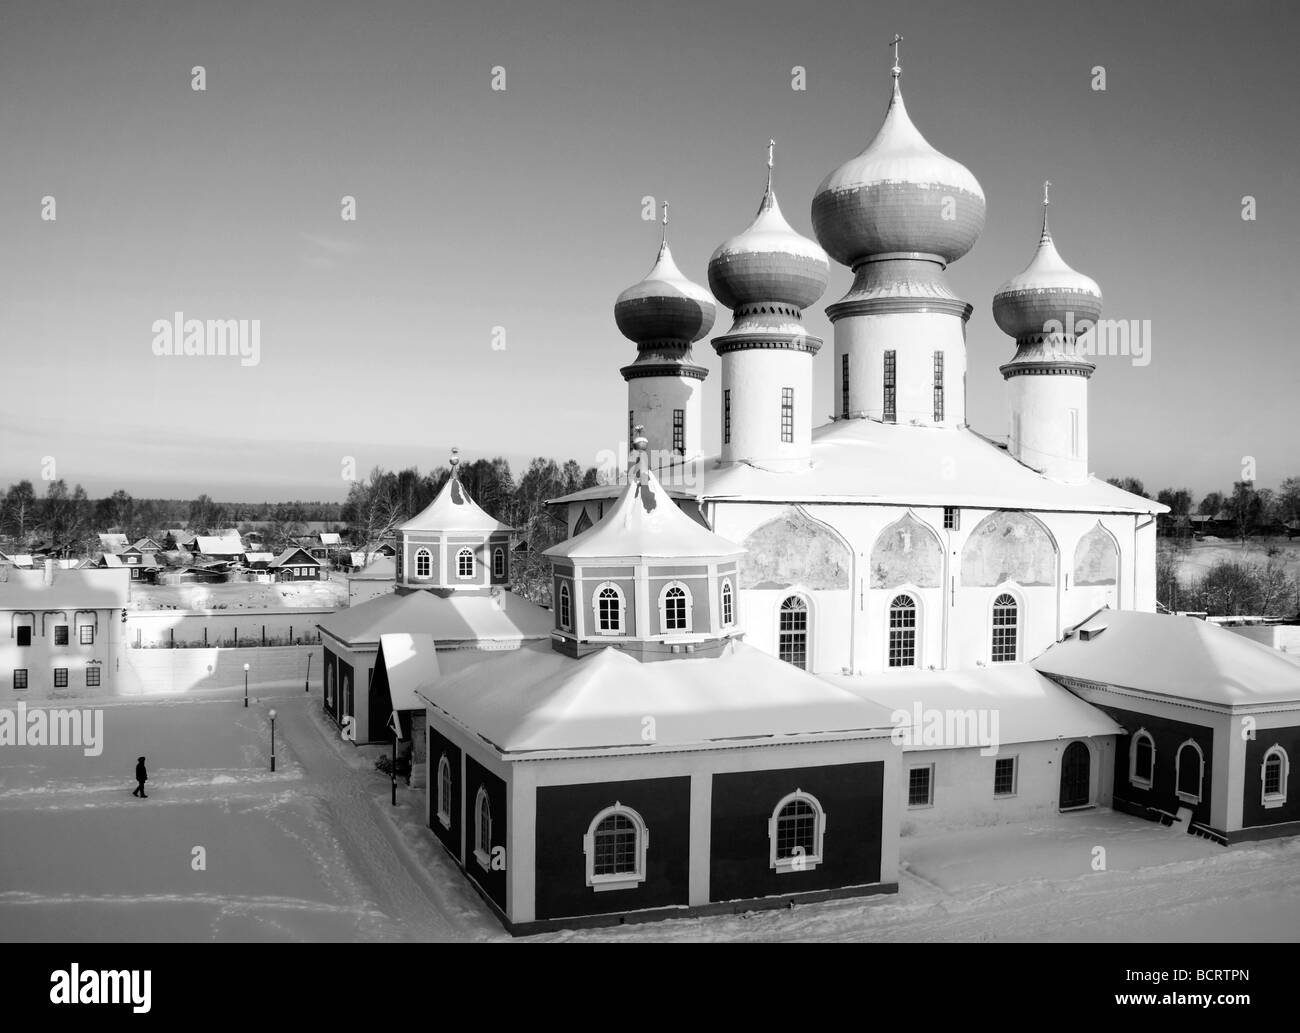 La cathédrale Ouspenski avec la vieille ville de Tikhvin en hiver, Bogorodichno Monastère Uspenskij, dans la région de Leningrad, Russie Banque D'Images